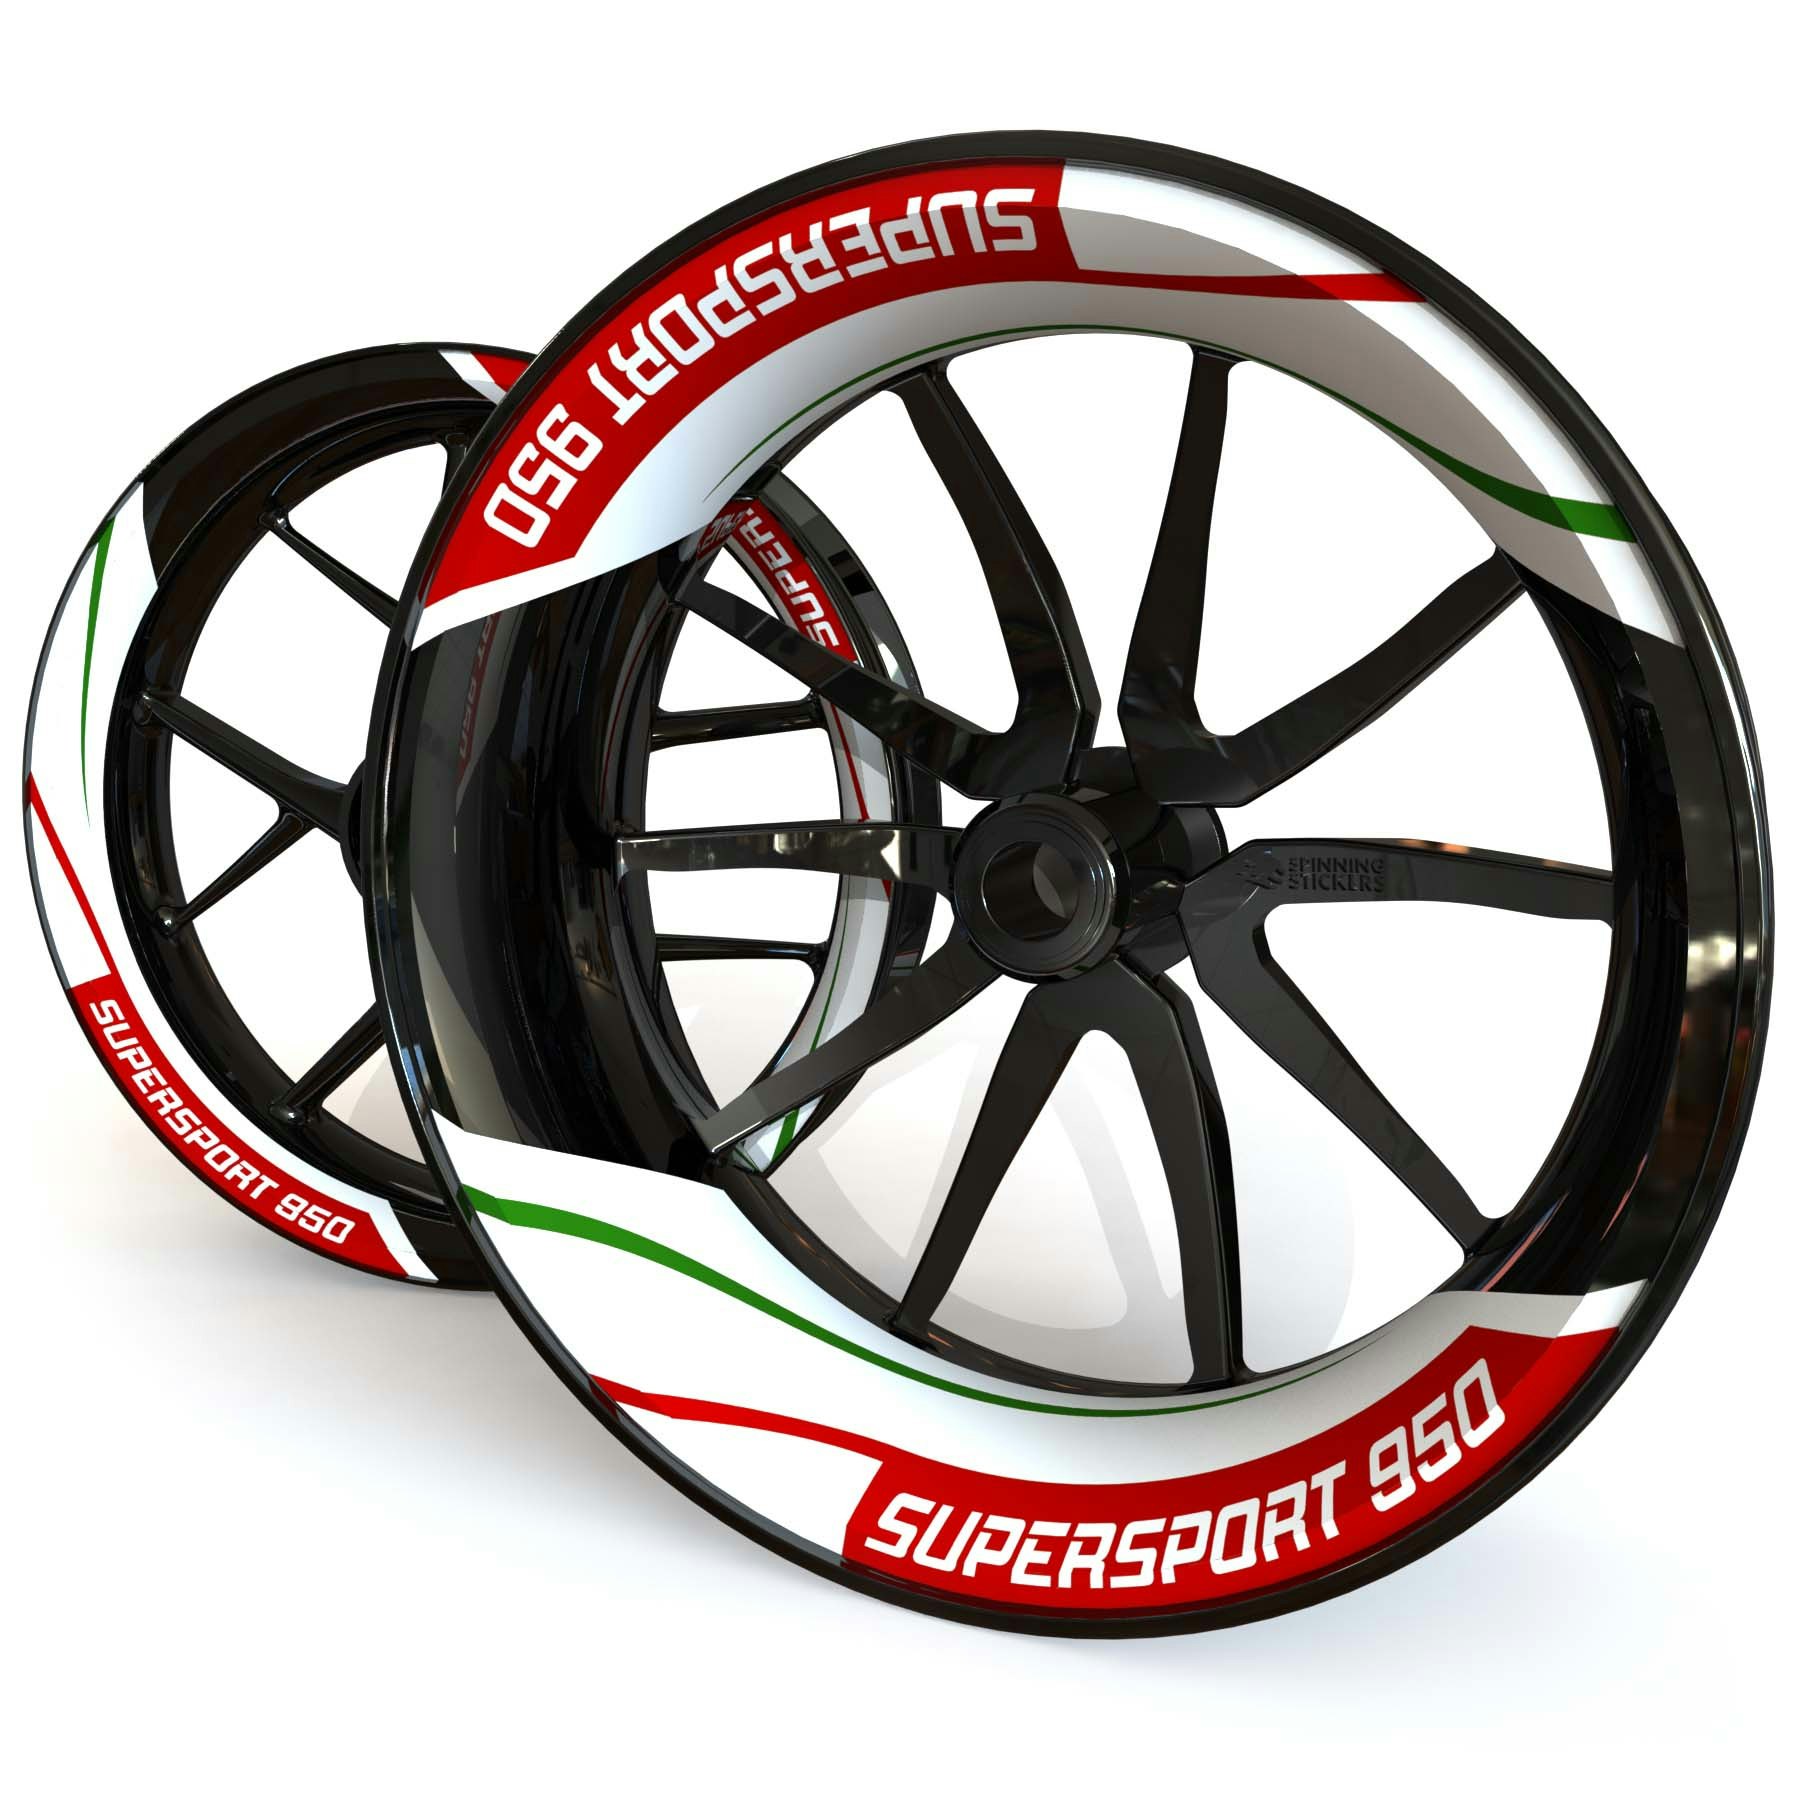 Adhesivos para ruedas Ducati SuperSport 950 - Diseño de dos piezas